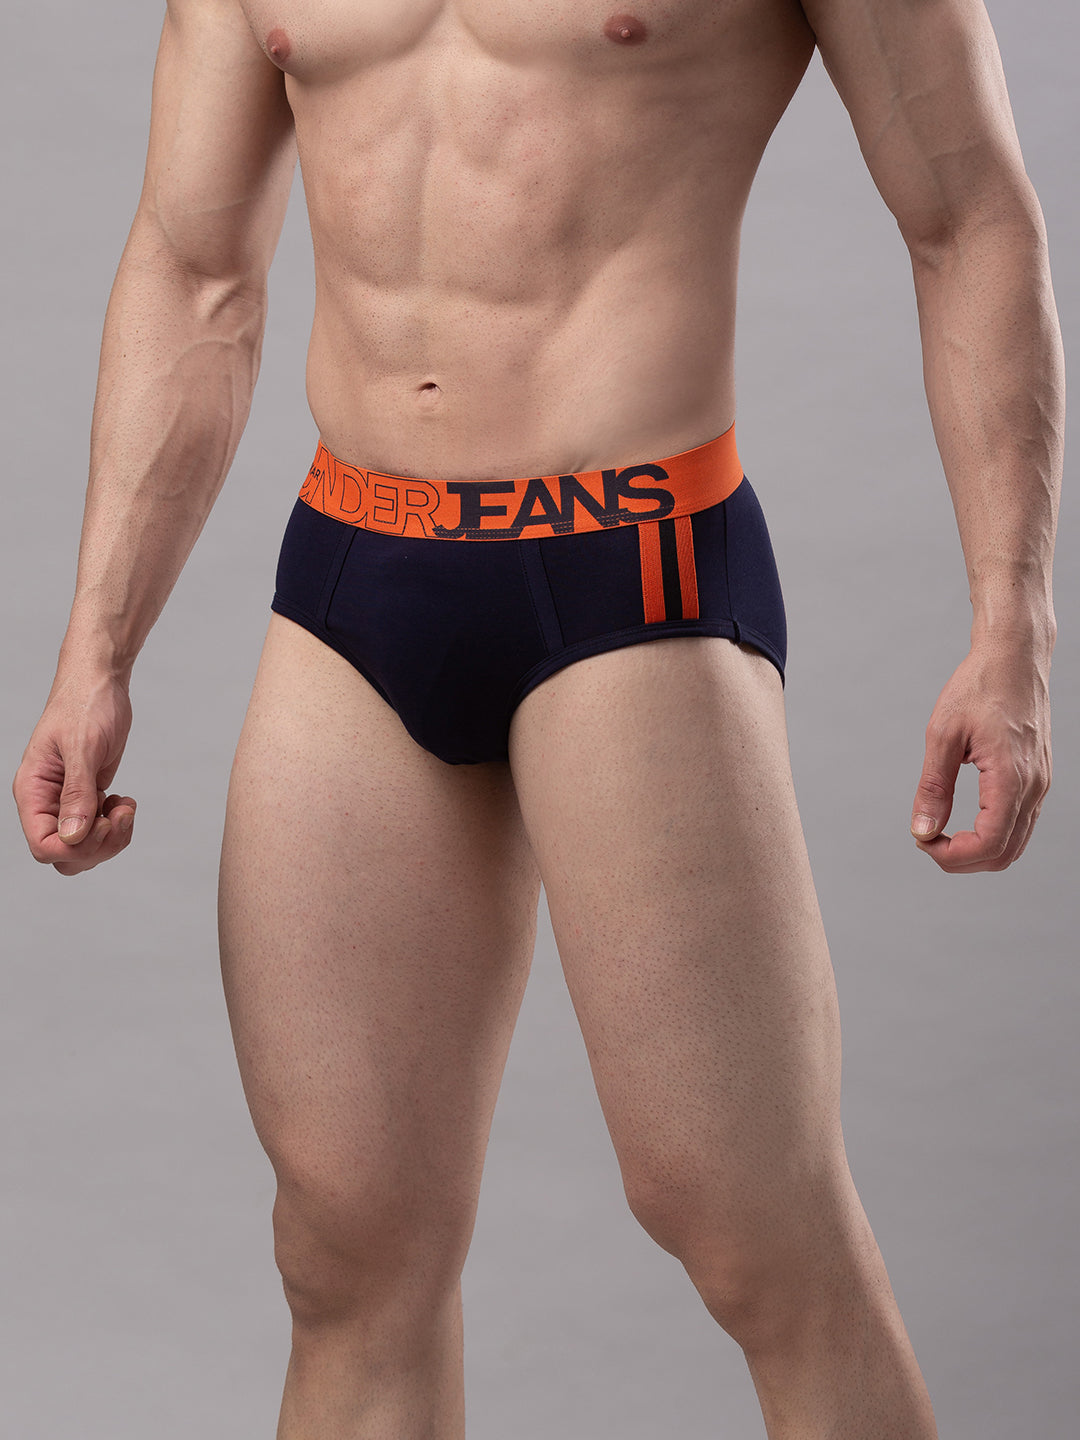 Men Premium Cotton Blend Navy-Orange Brief- UnderJeans by Spykar